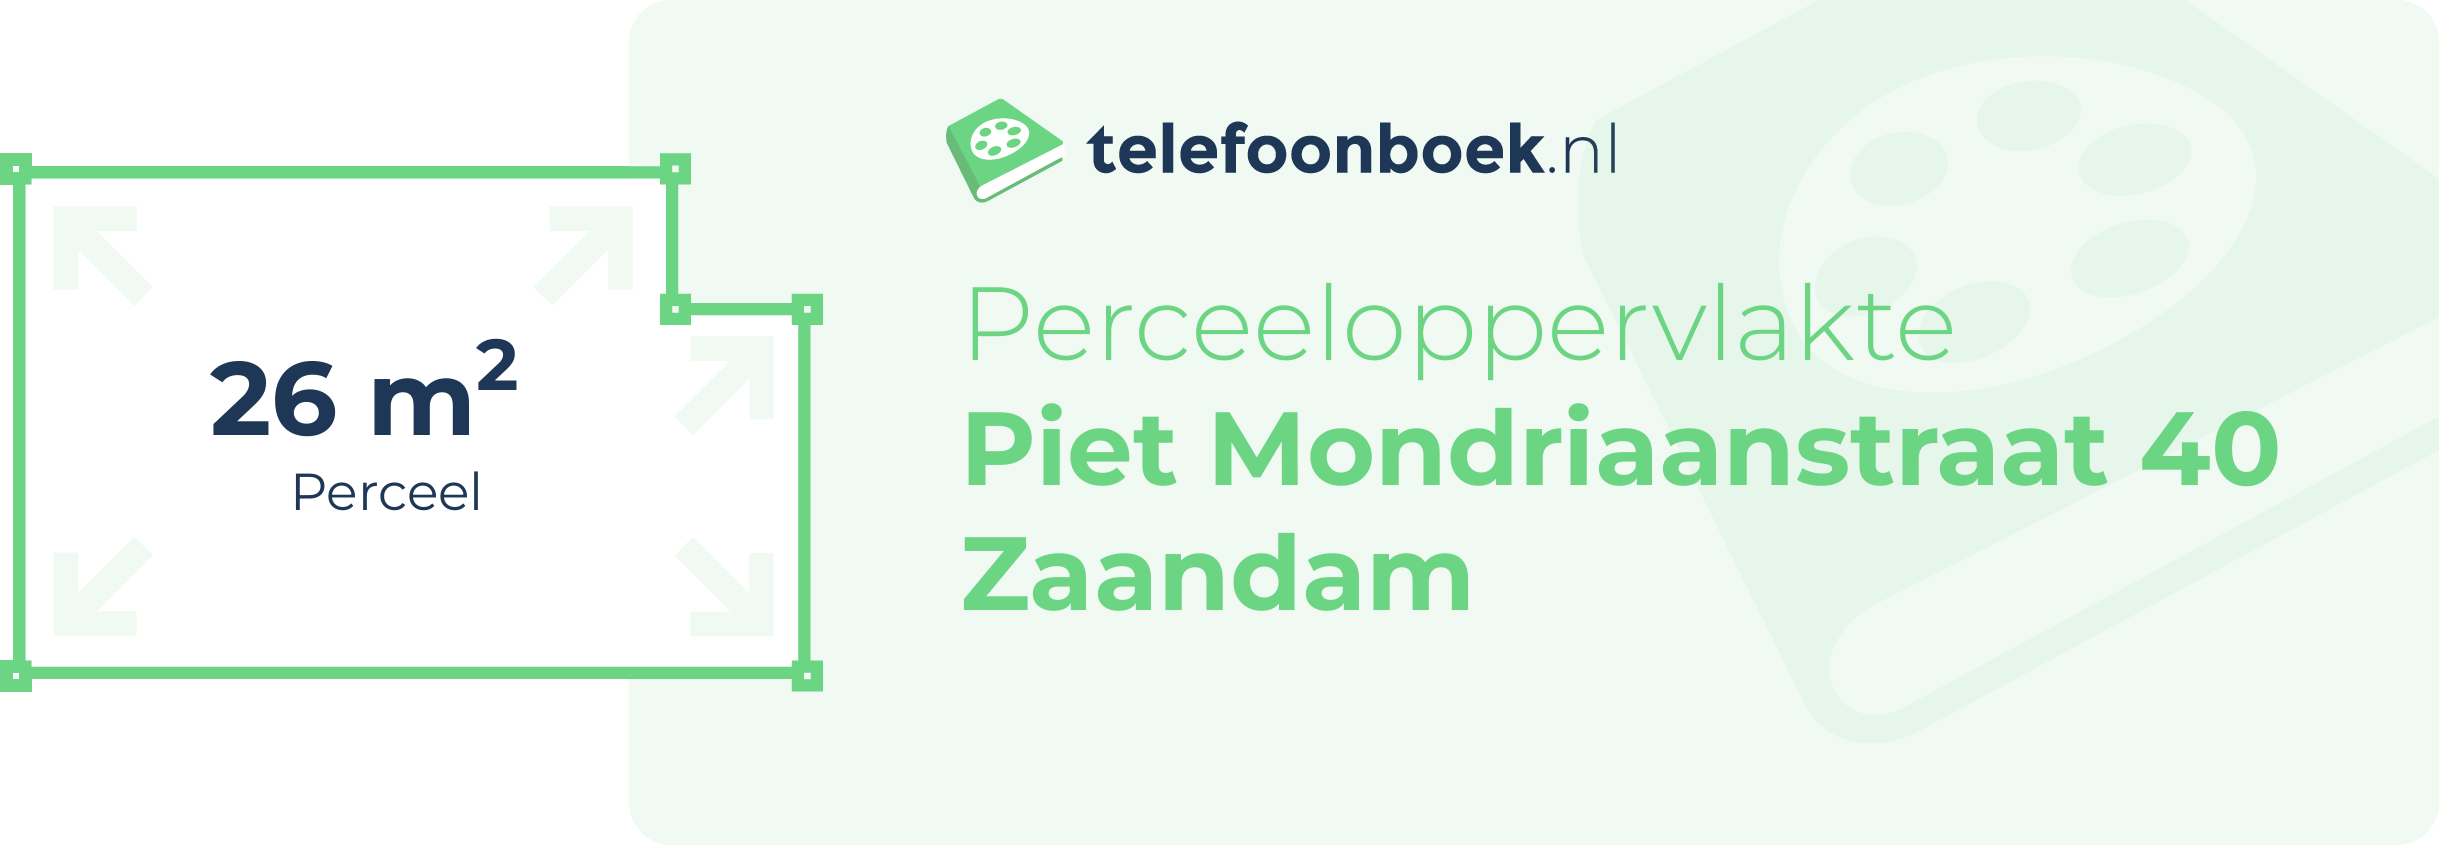 Perceeloppervlakte Piet Mondriaanstraat 40 Zaandam